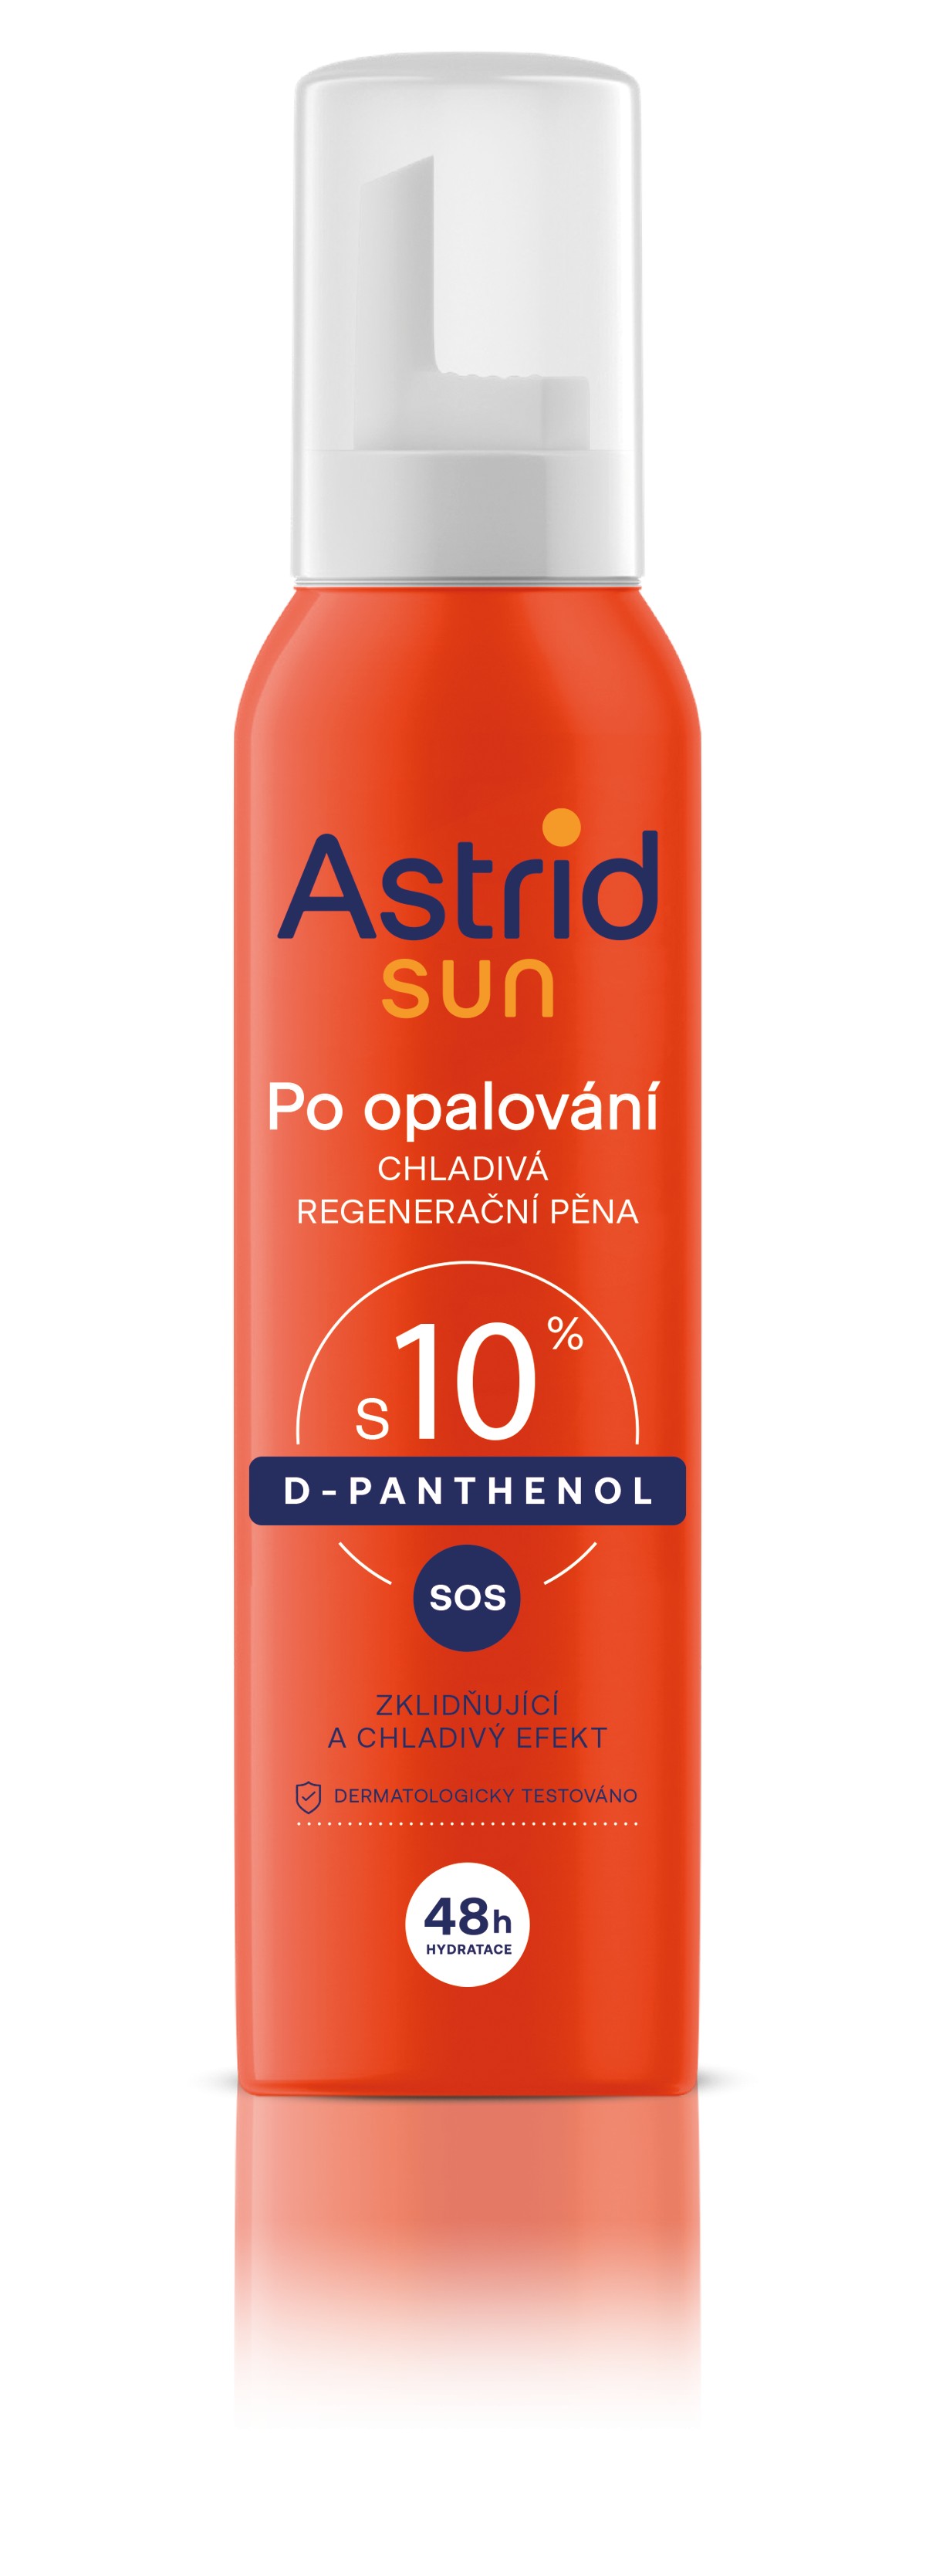 Astrid Chladivá regenerační pěna po opalování Sun 150 ml